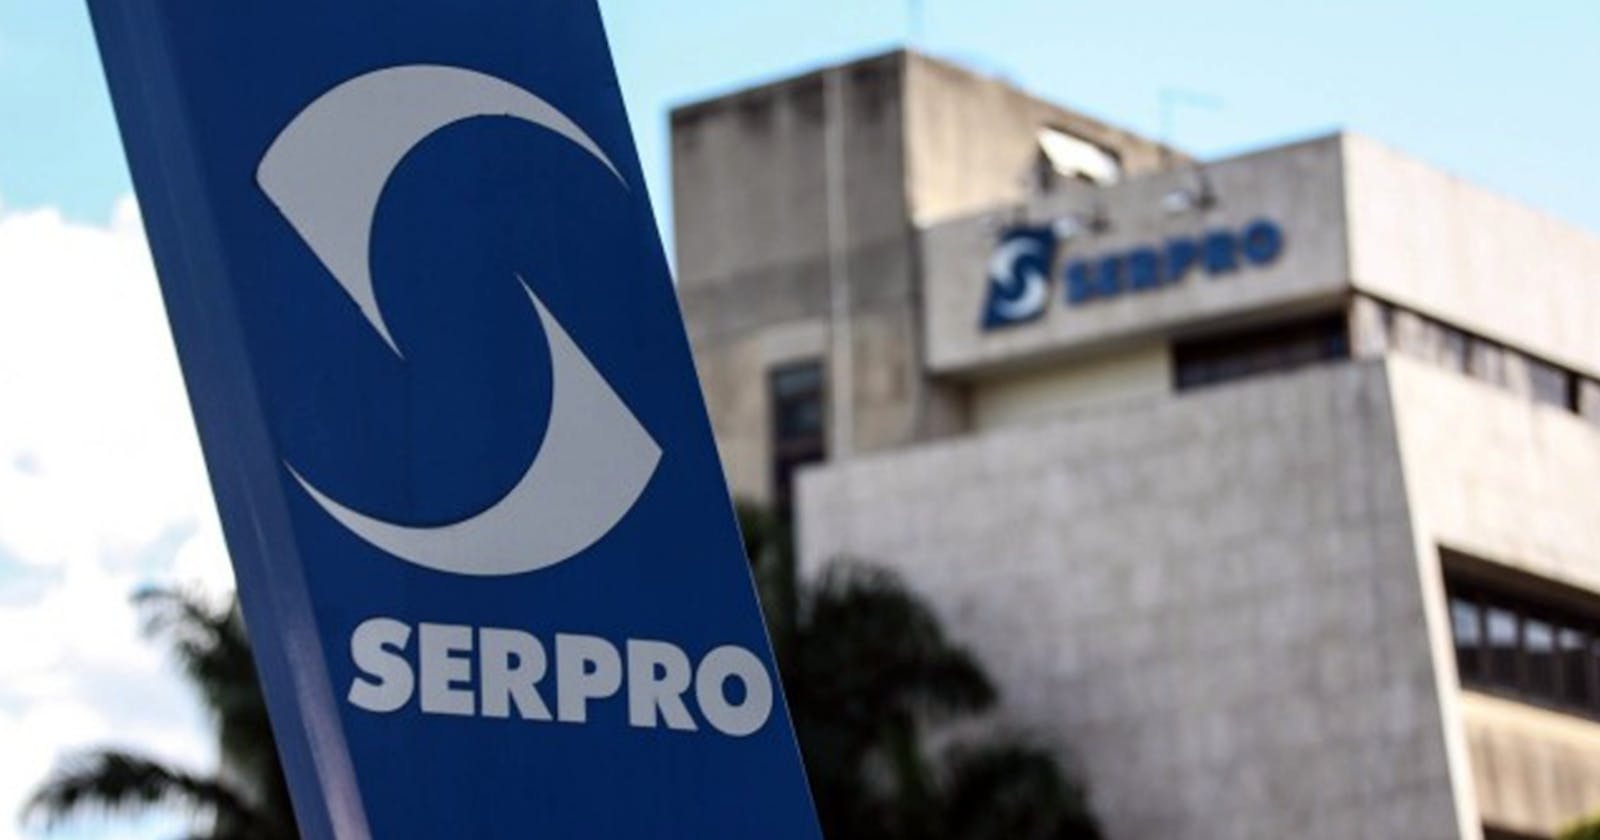 Serpro oferece 600 vagas com remuneração inicial de R$ 9 mil